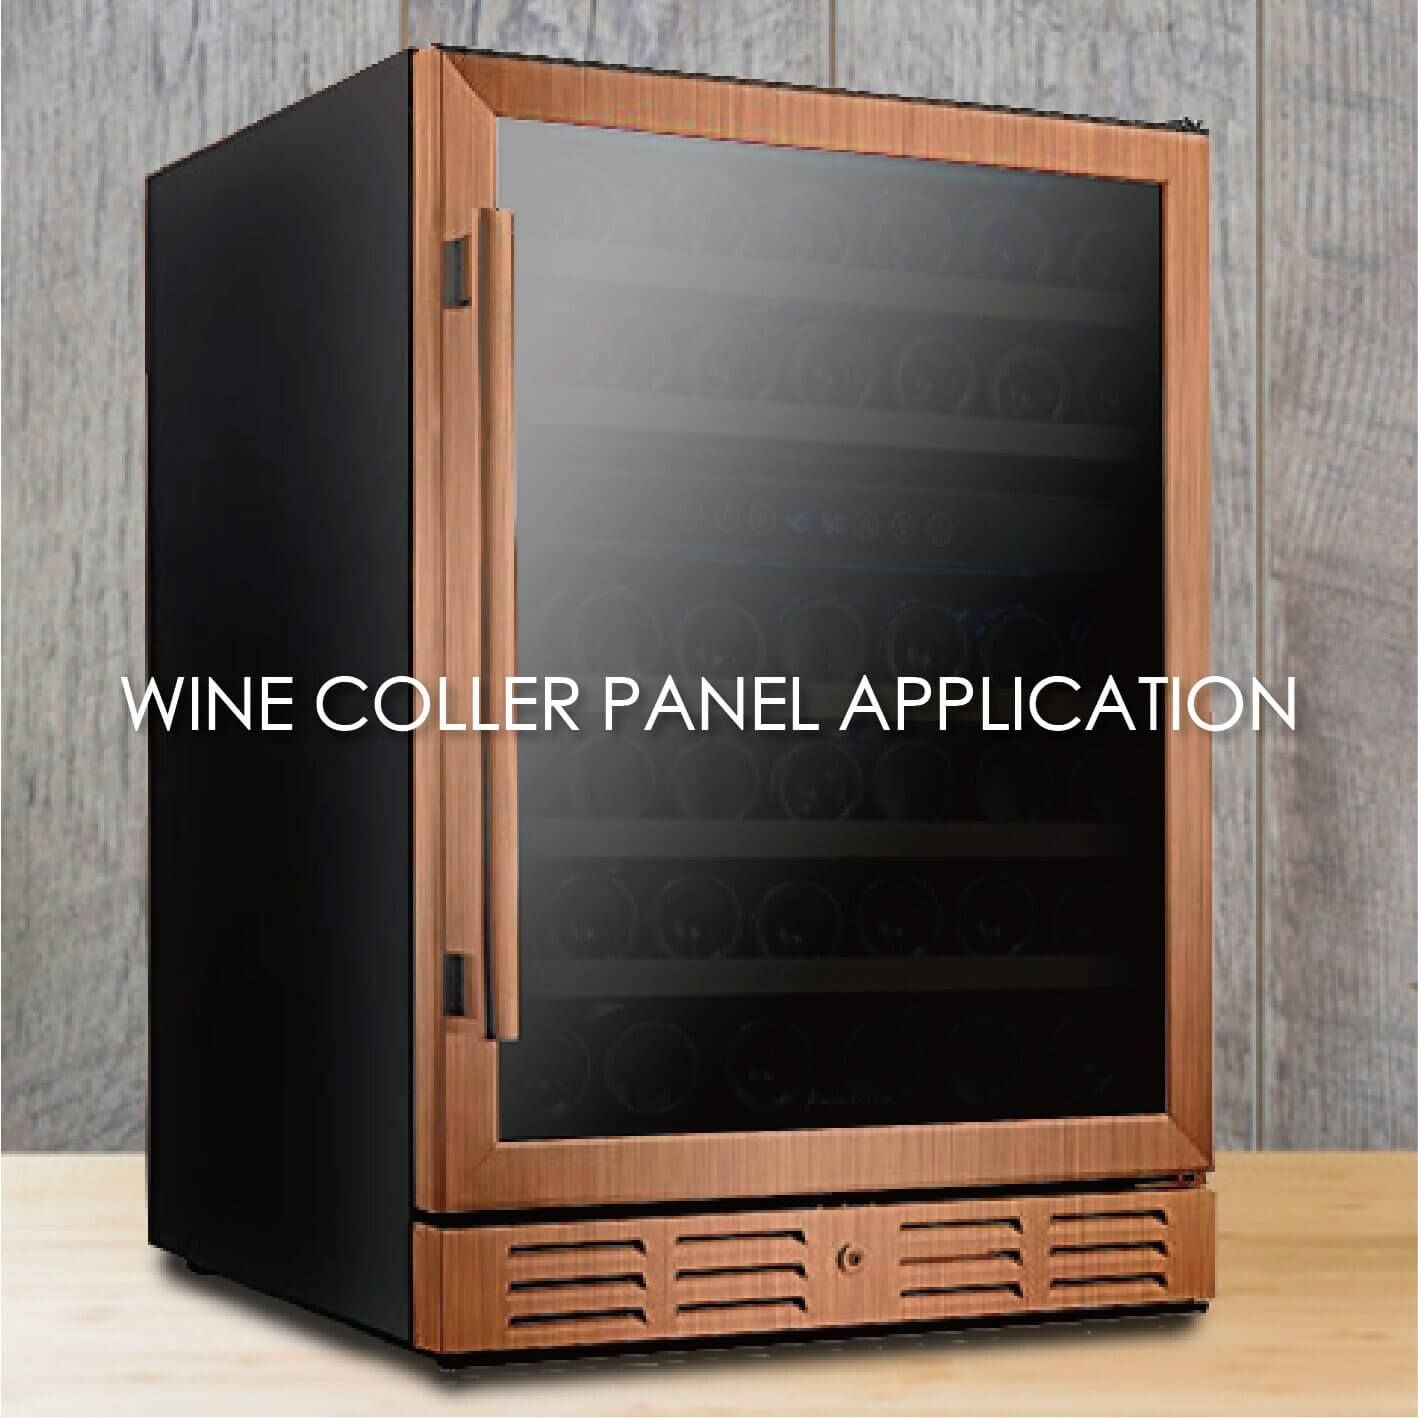 选用木纹覆膜金属制作酒柜面板能增加美观性和耐用性